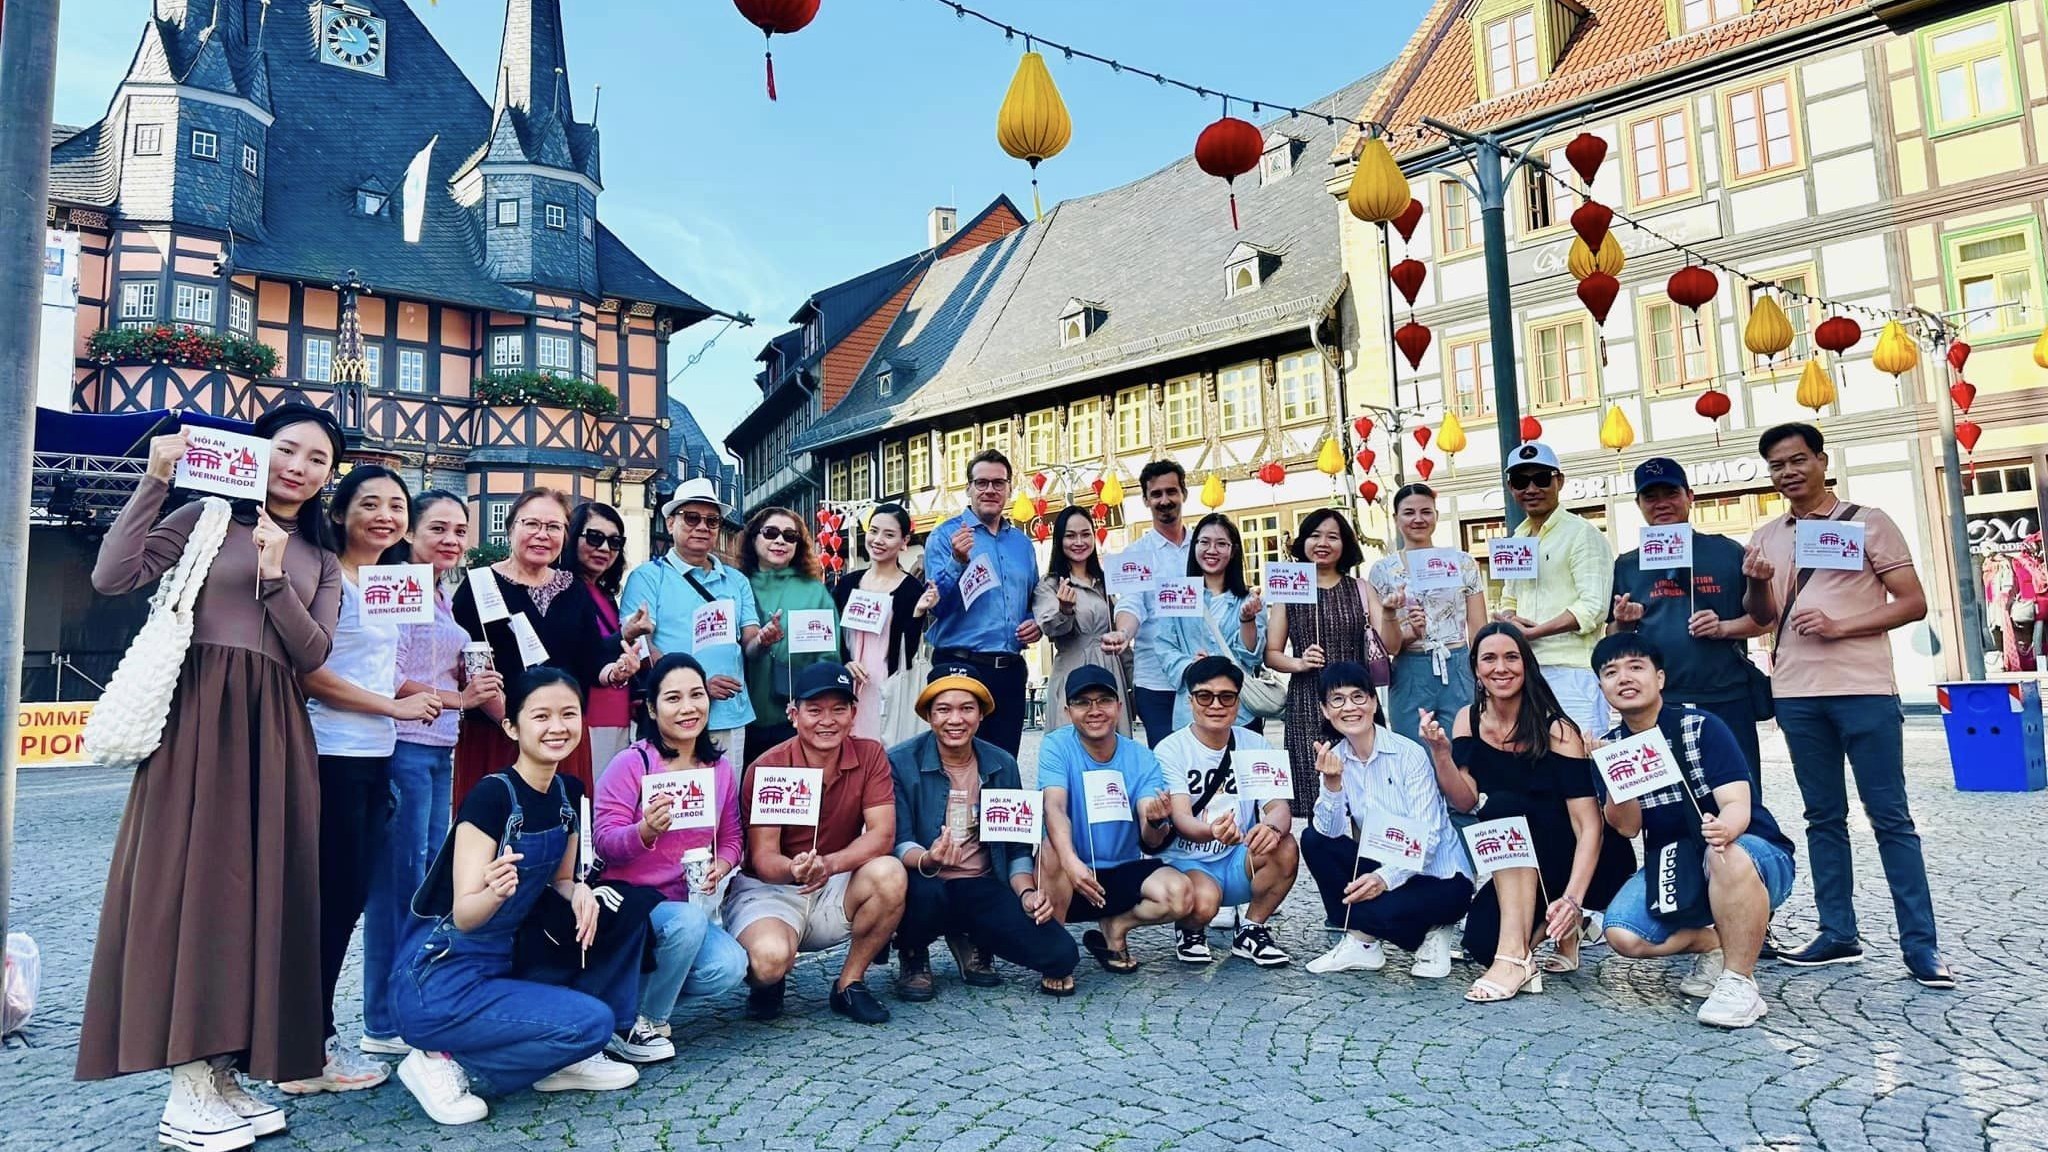 10 năm kết nghĩa giữa hai thành phố Hội An (Việt Nam) - Wernigerode (Đức): Thực chất và hiệu quả